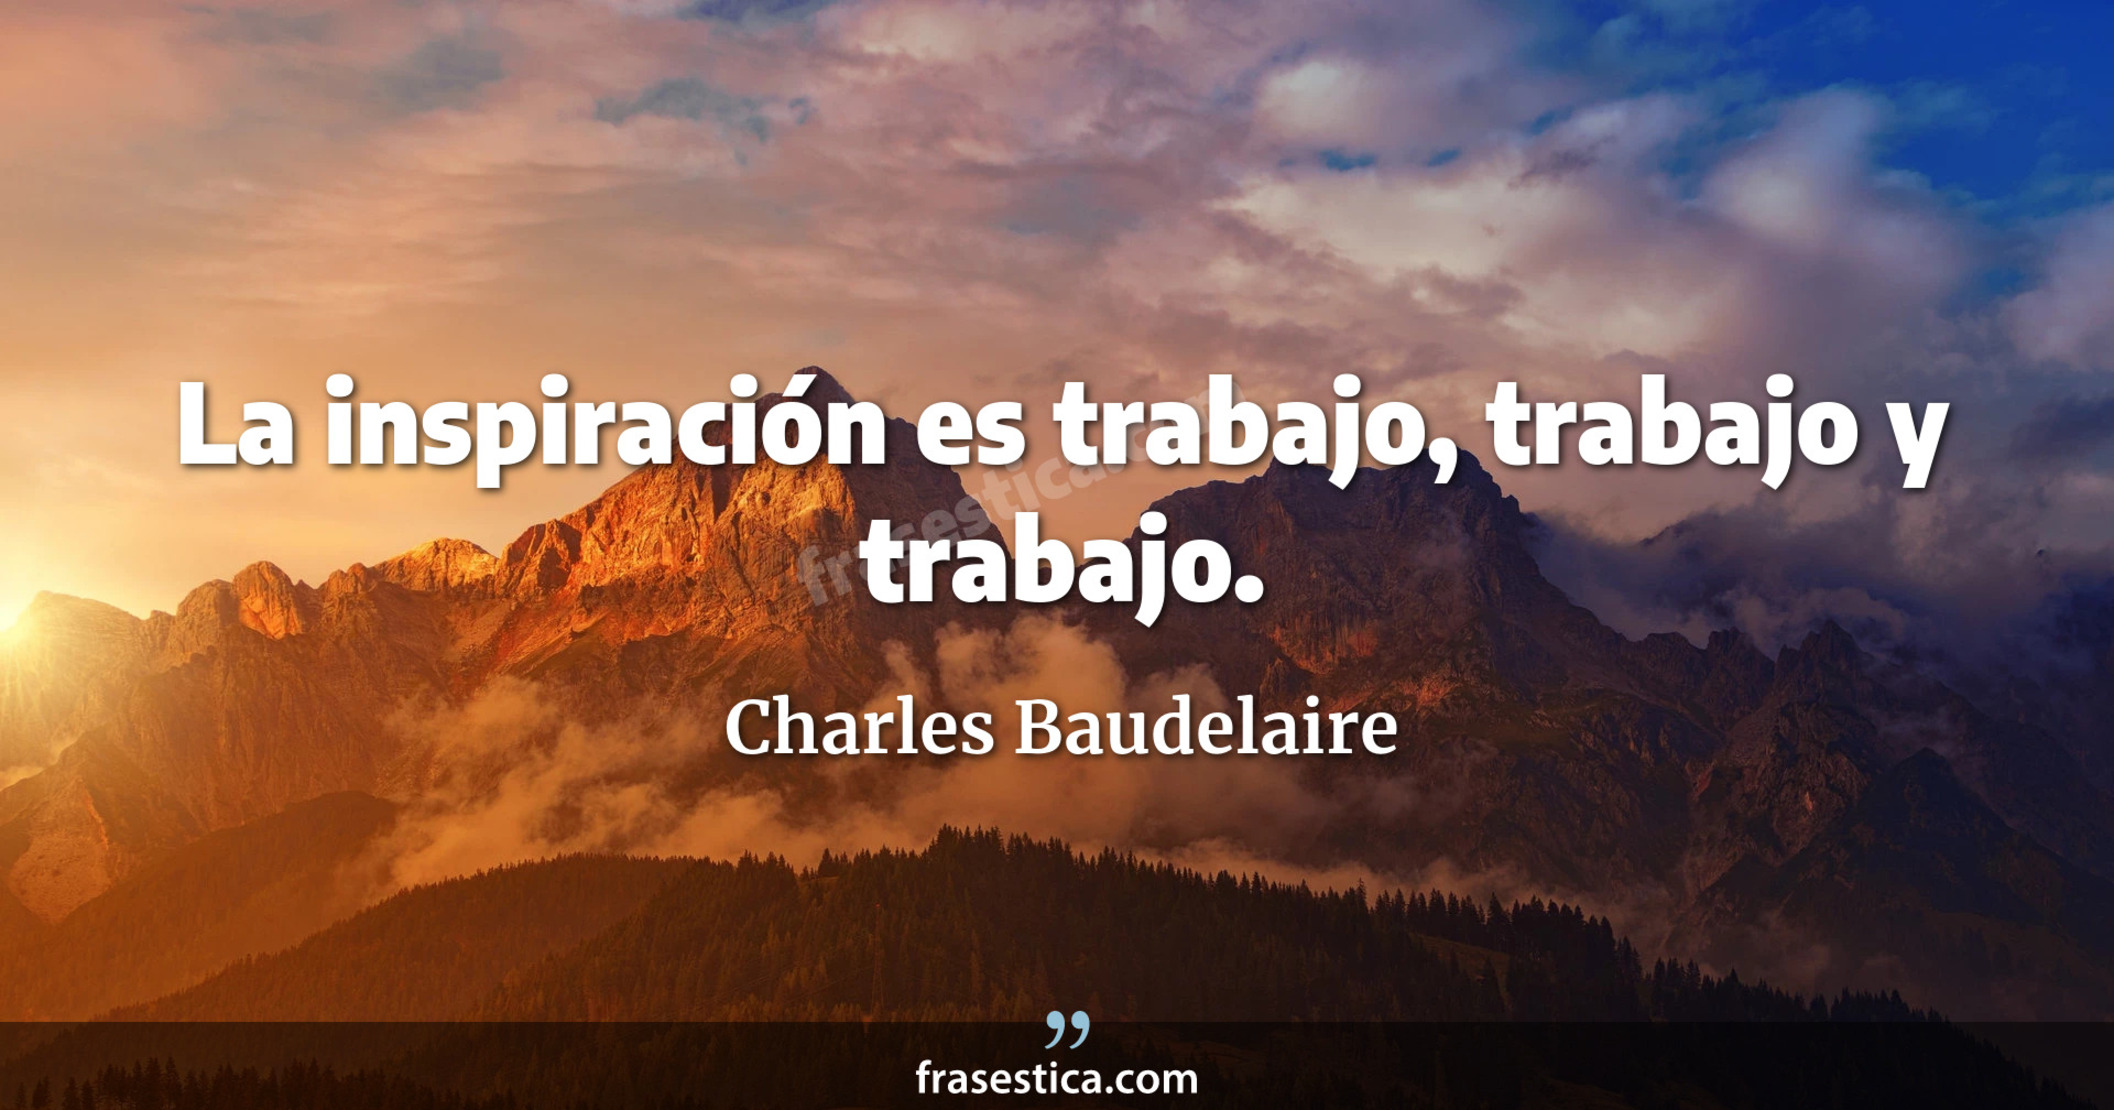 La inspiración es trabajo, trabajo y trabajo. - Charles Baudelaire